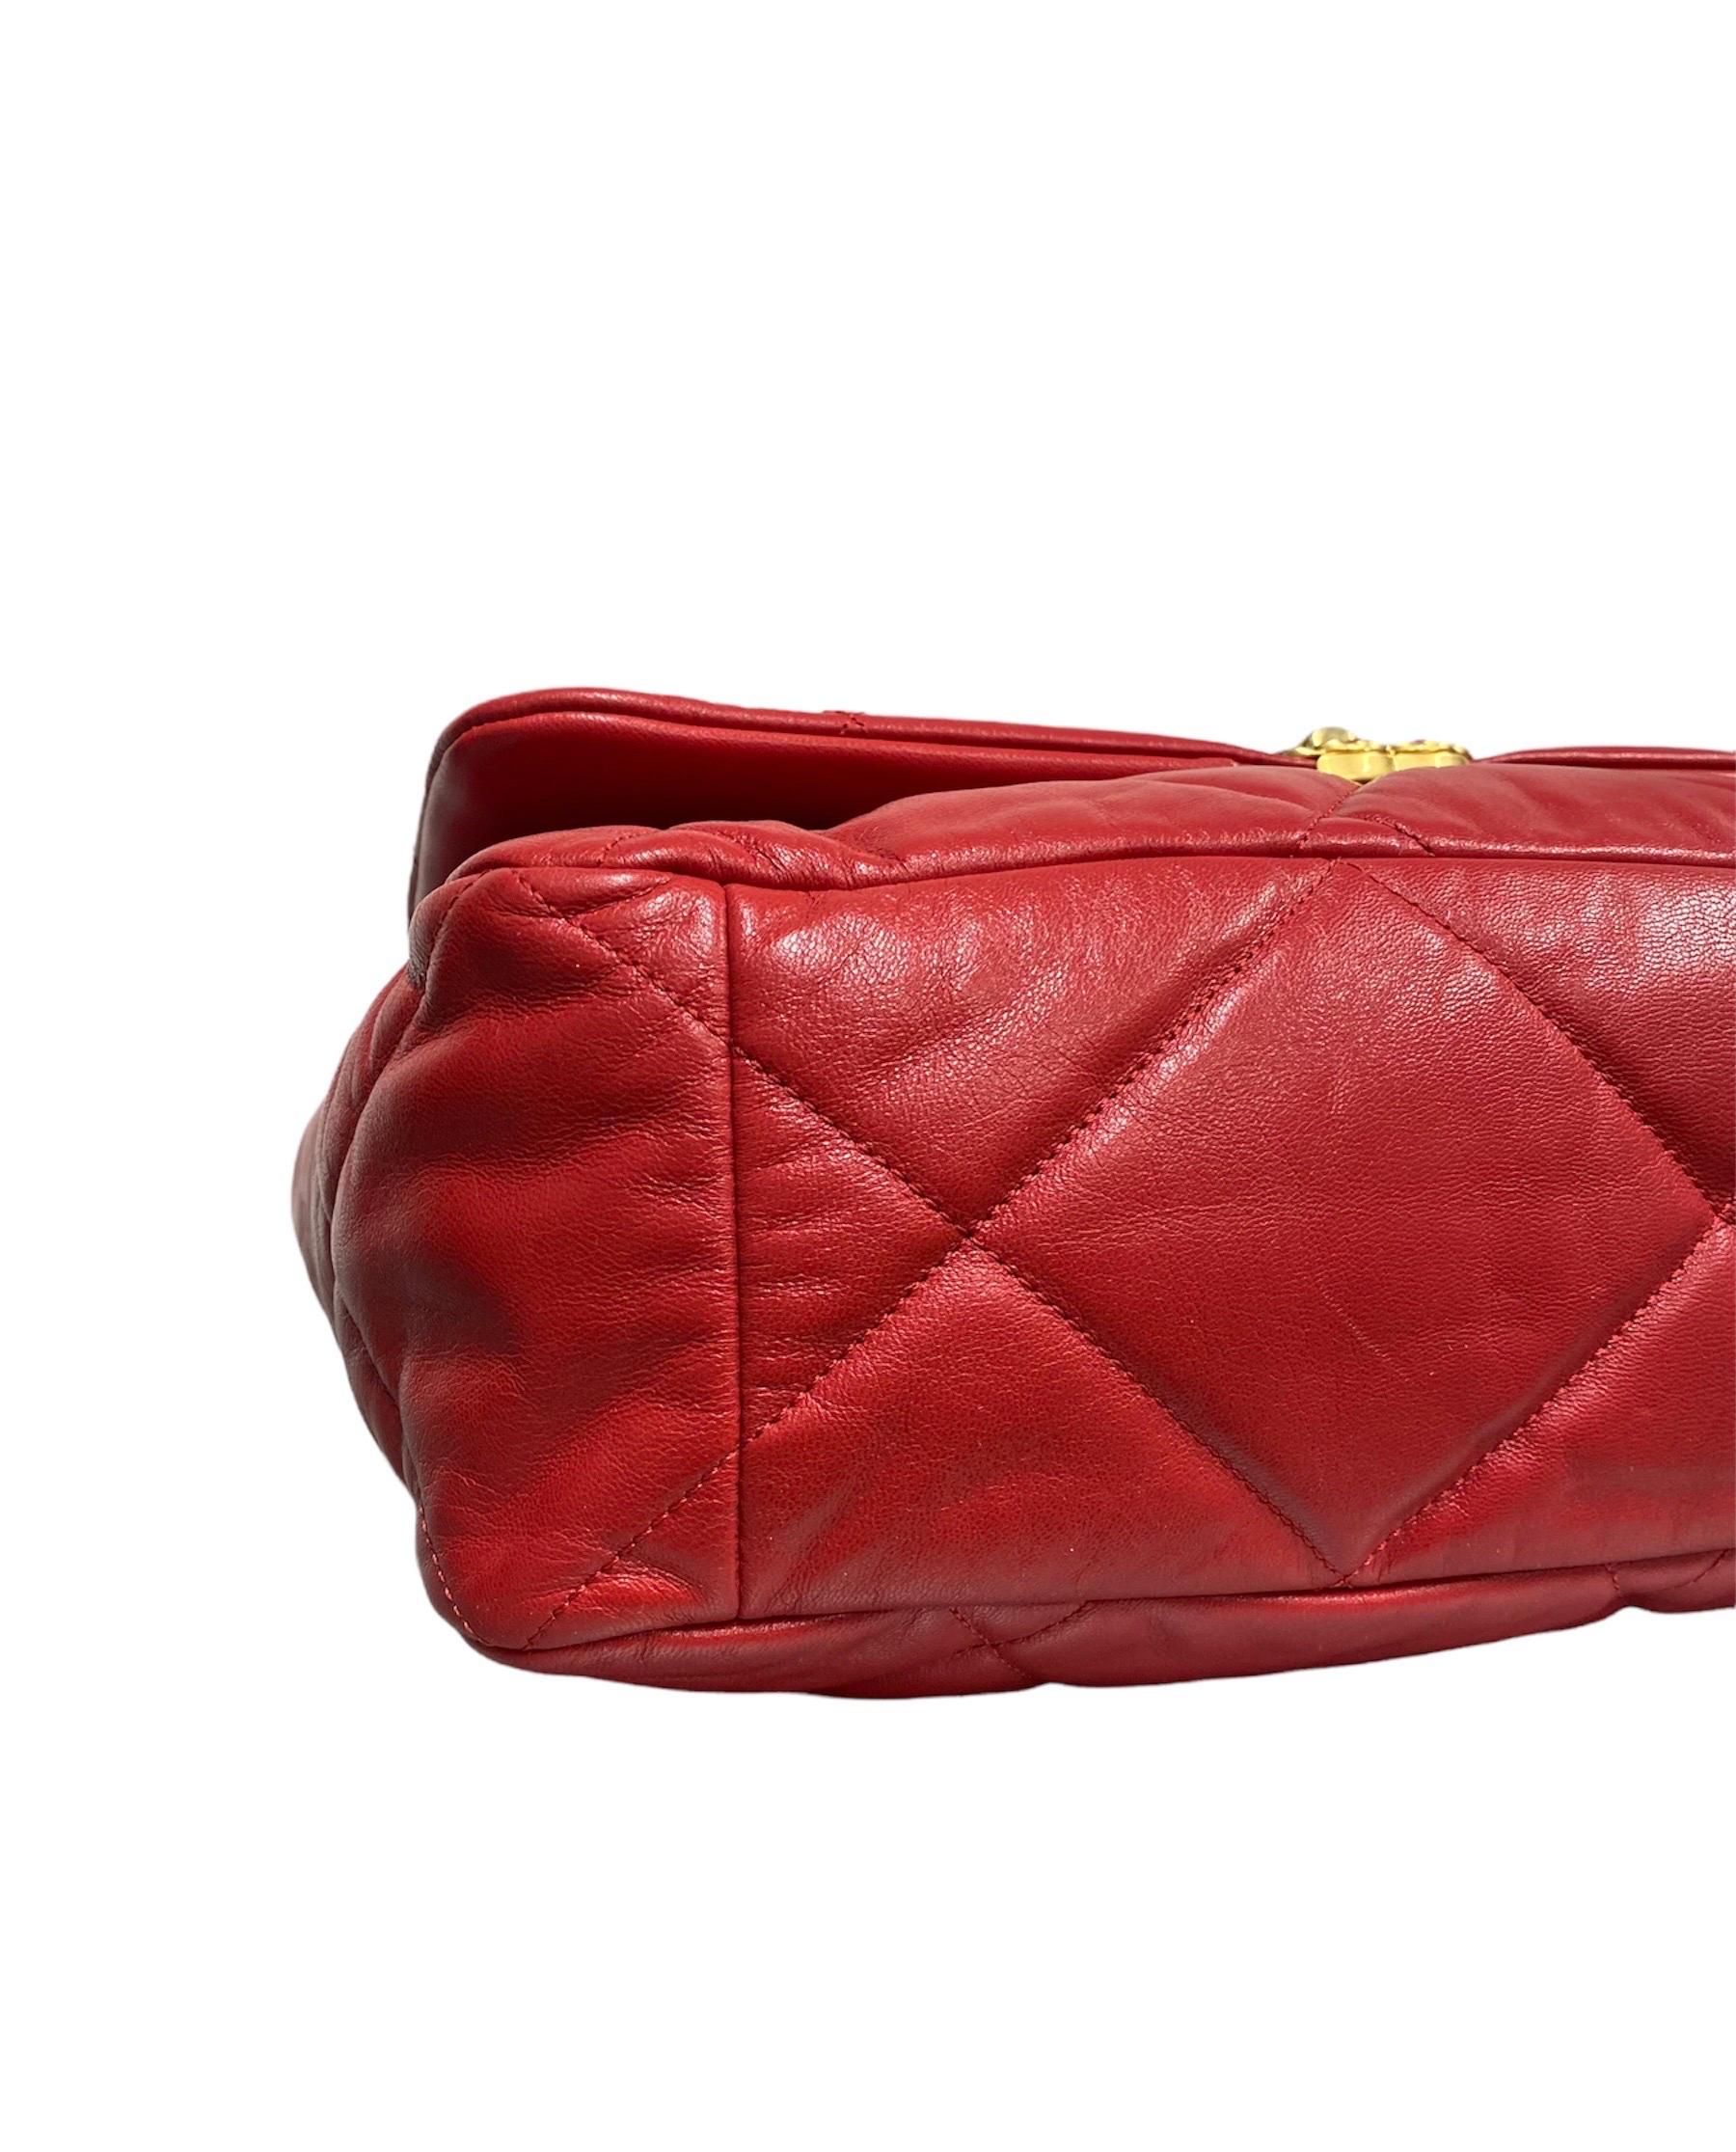 2019 Chanel 19 Red Shoulder Bag Big Size 2